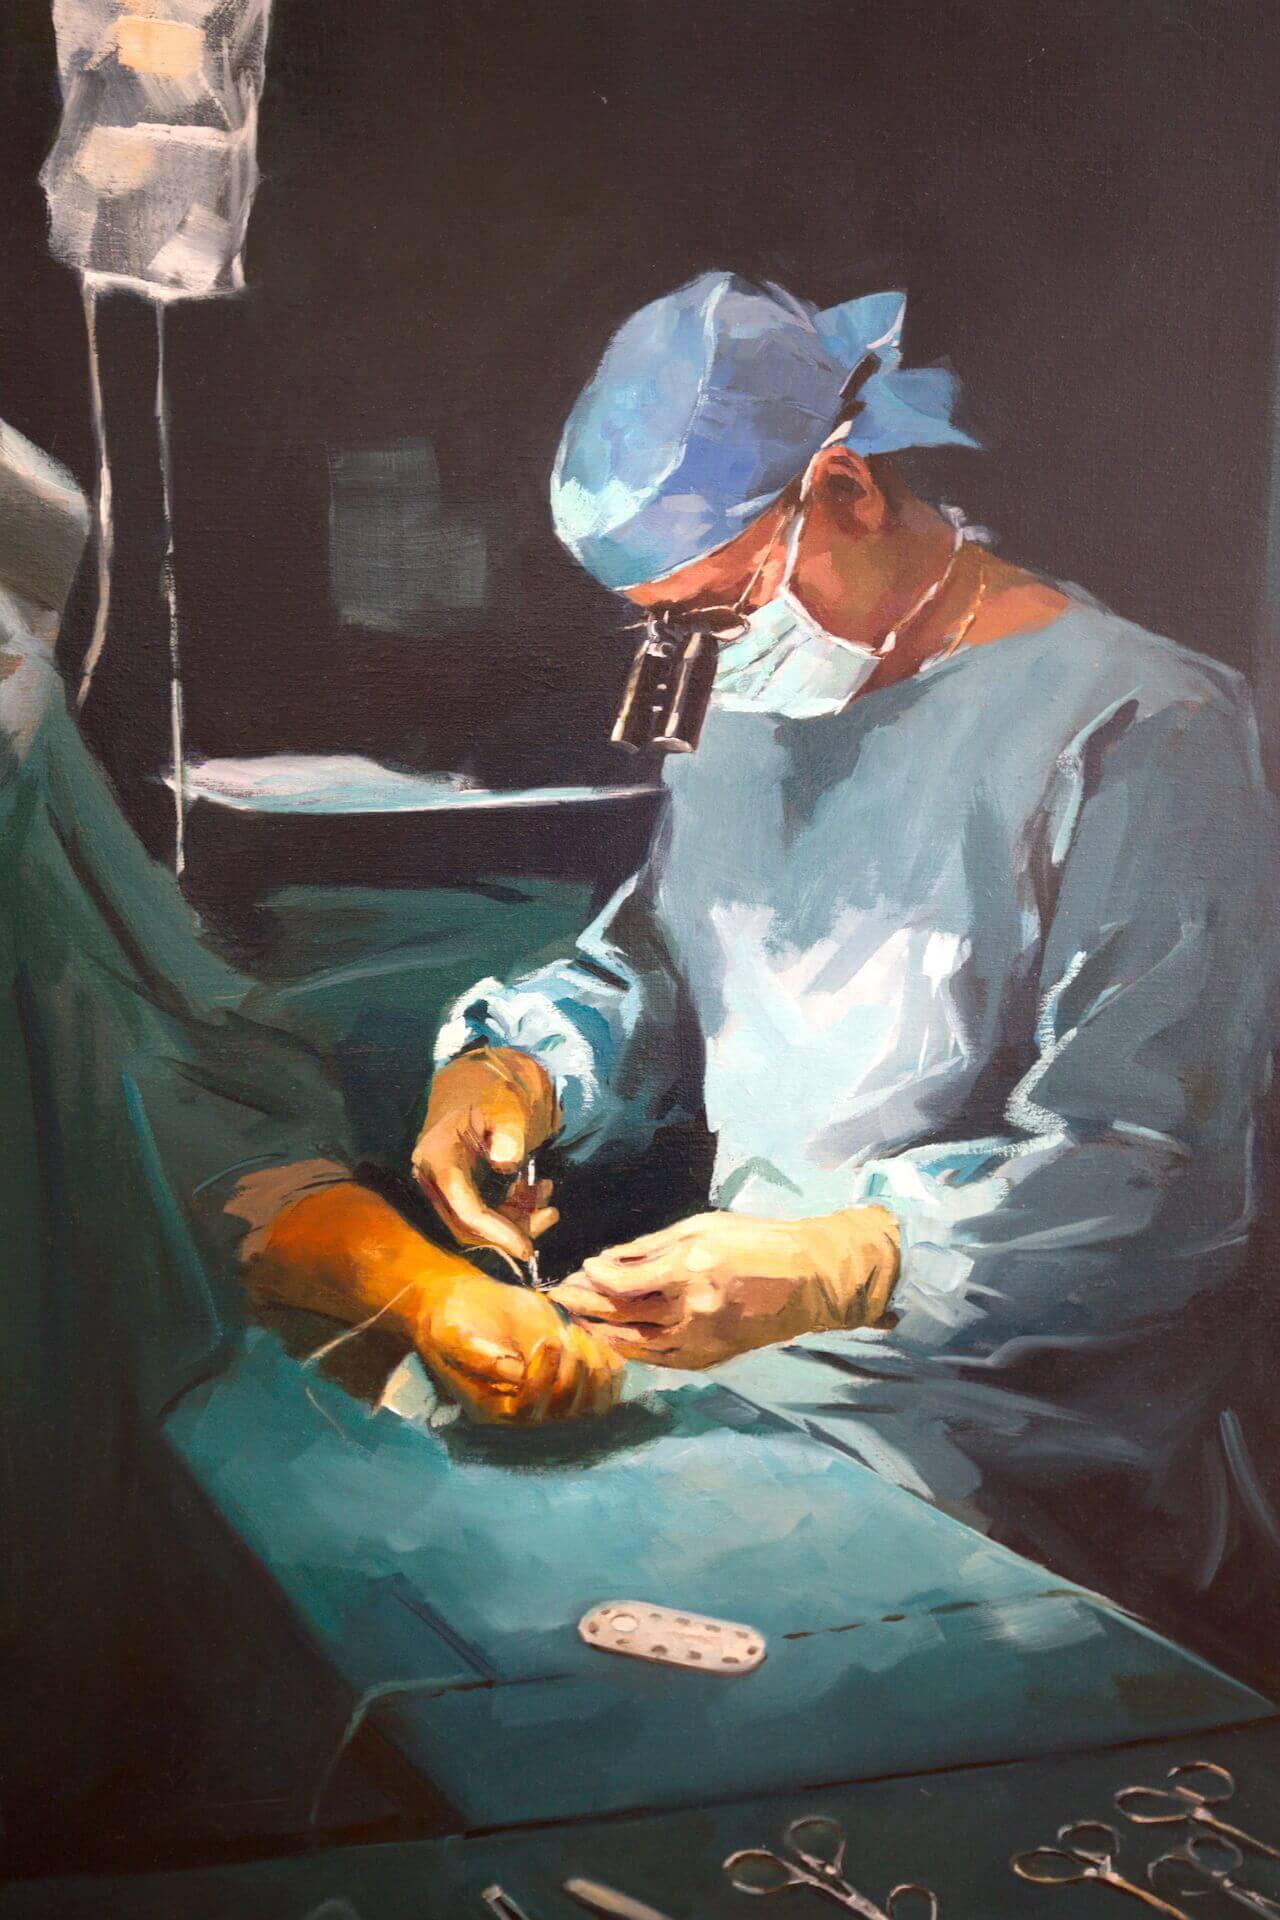 Eric Roulot - Chirurgien orthopédiste spécialiste de la main à Paris et du membre supérieur - opération de la main Clinique Jouvenet Paris 16